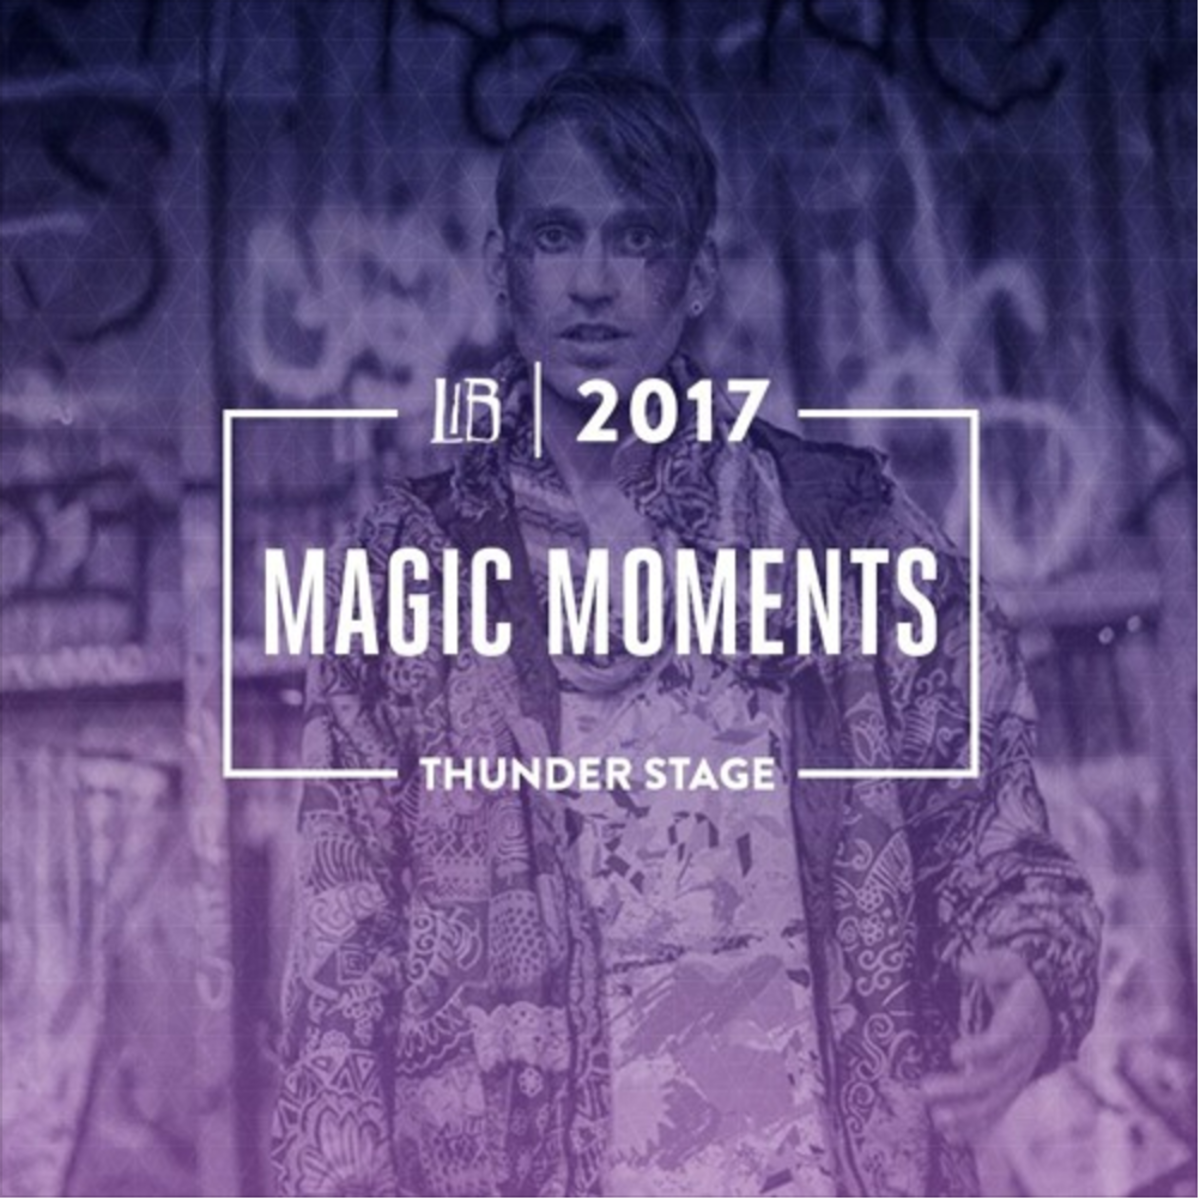 Magic Moments LIB 2017 Set